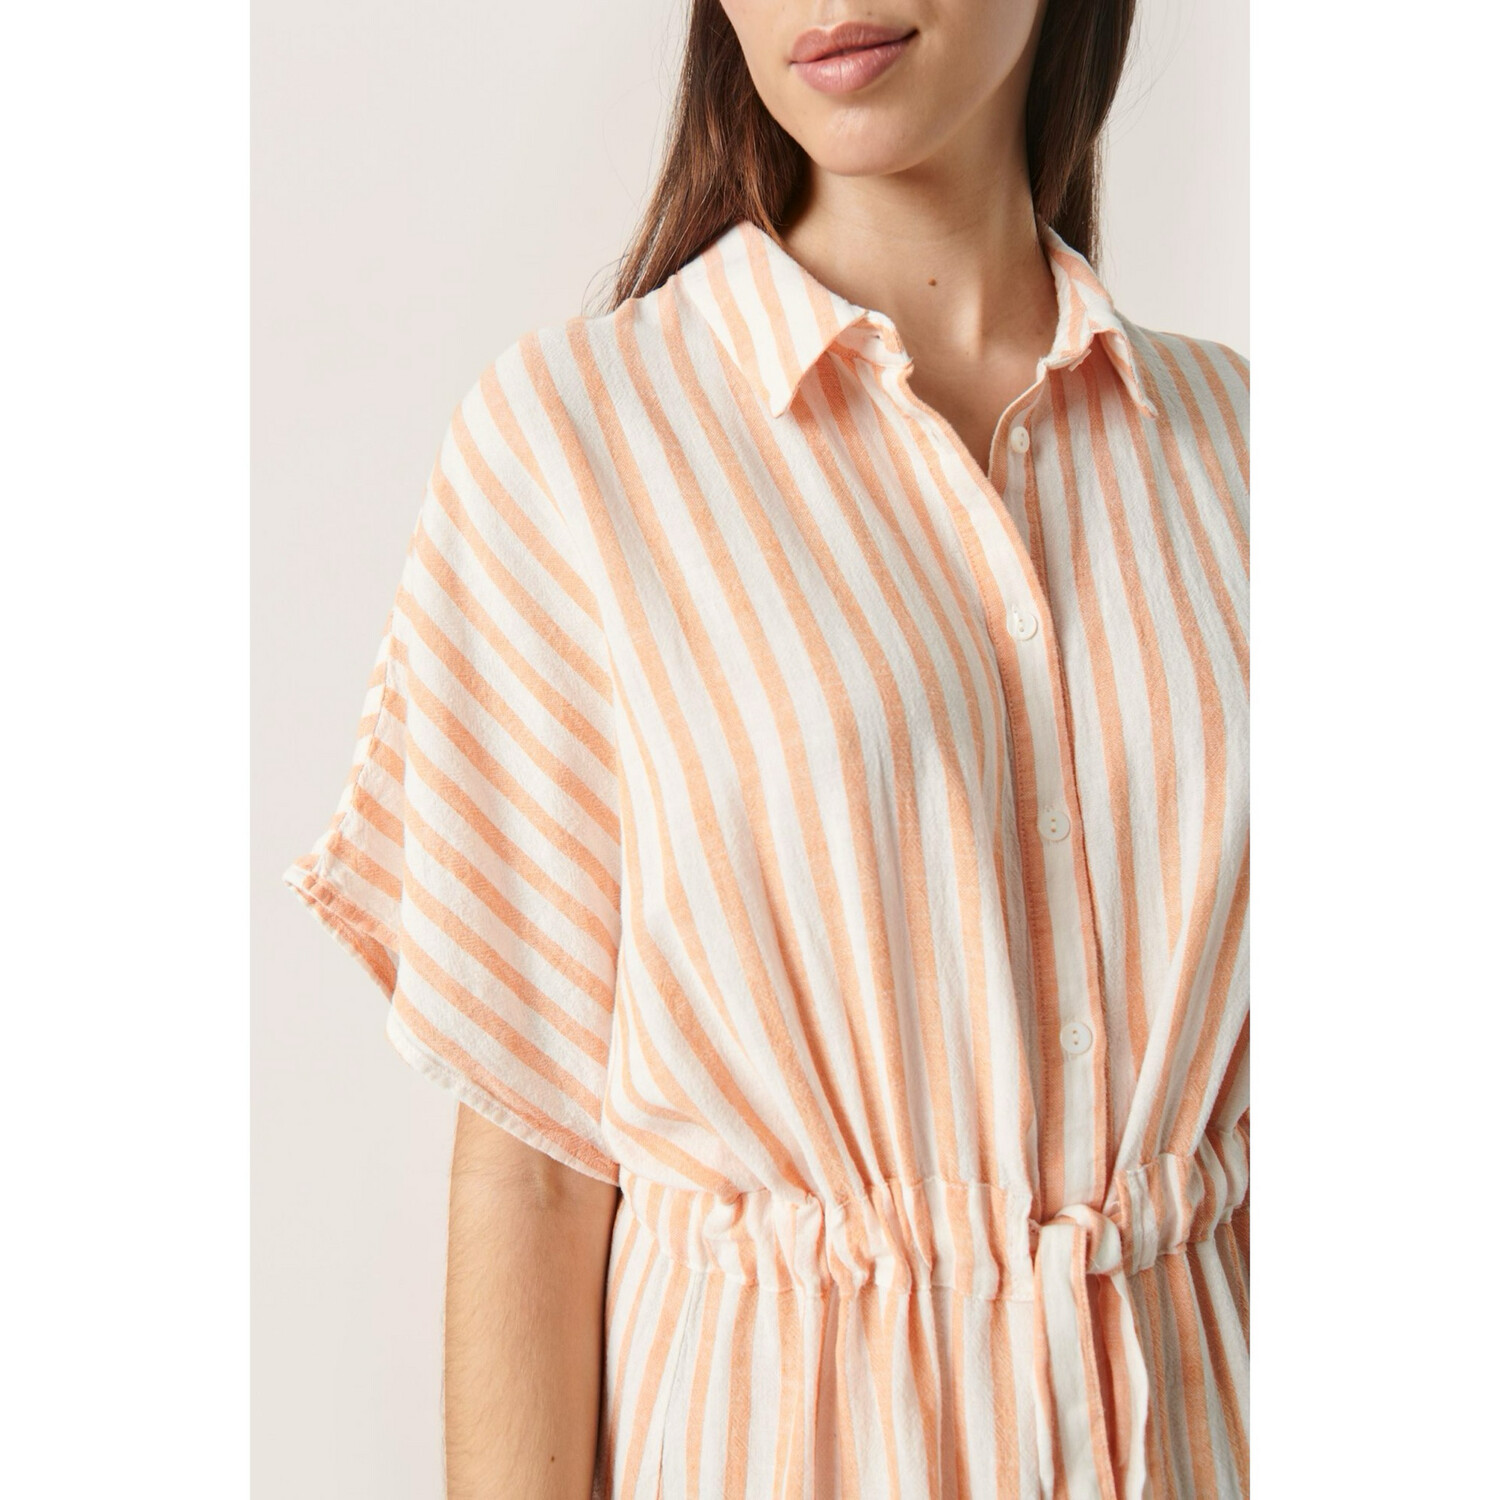 Giselle Tangerine Stripe Dress